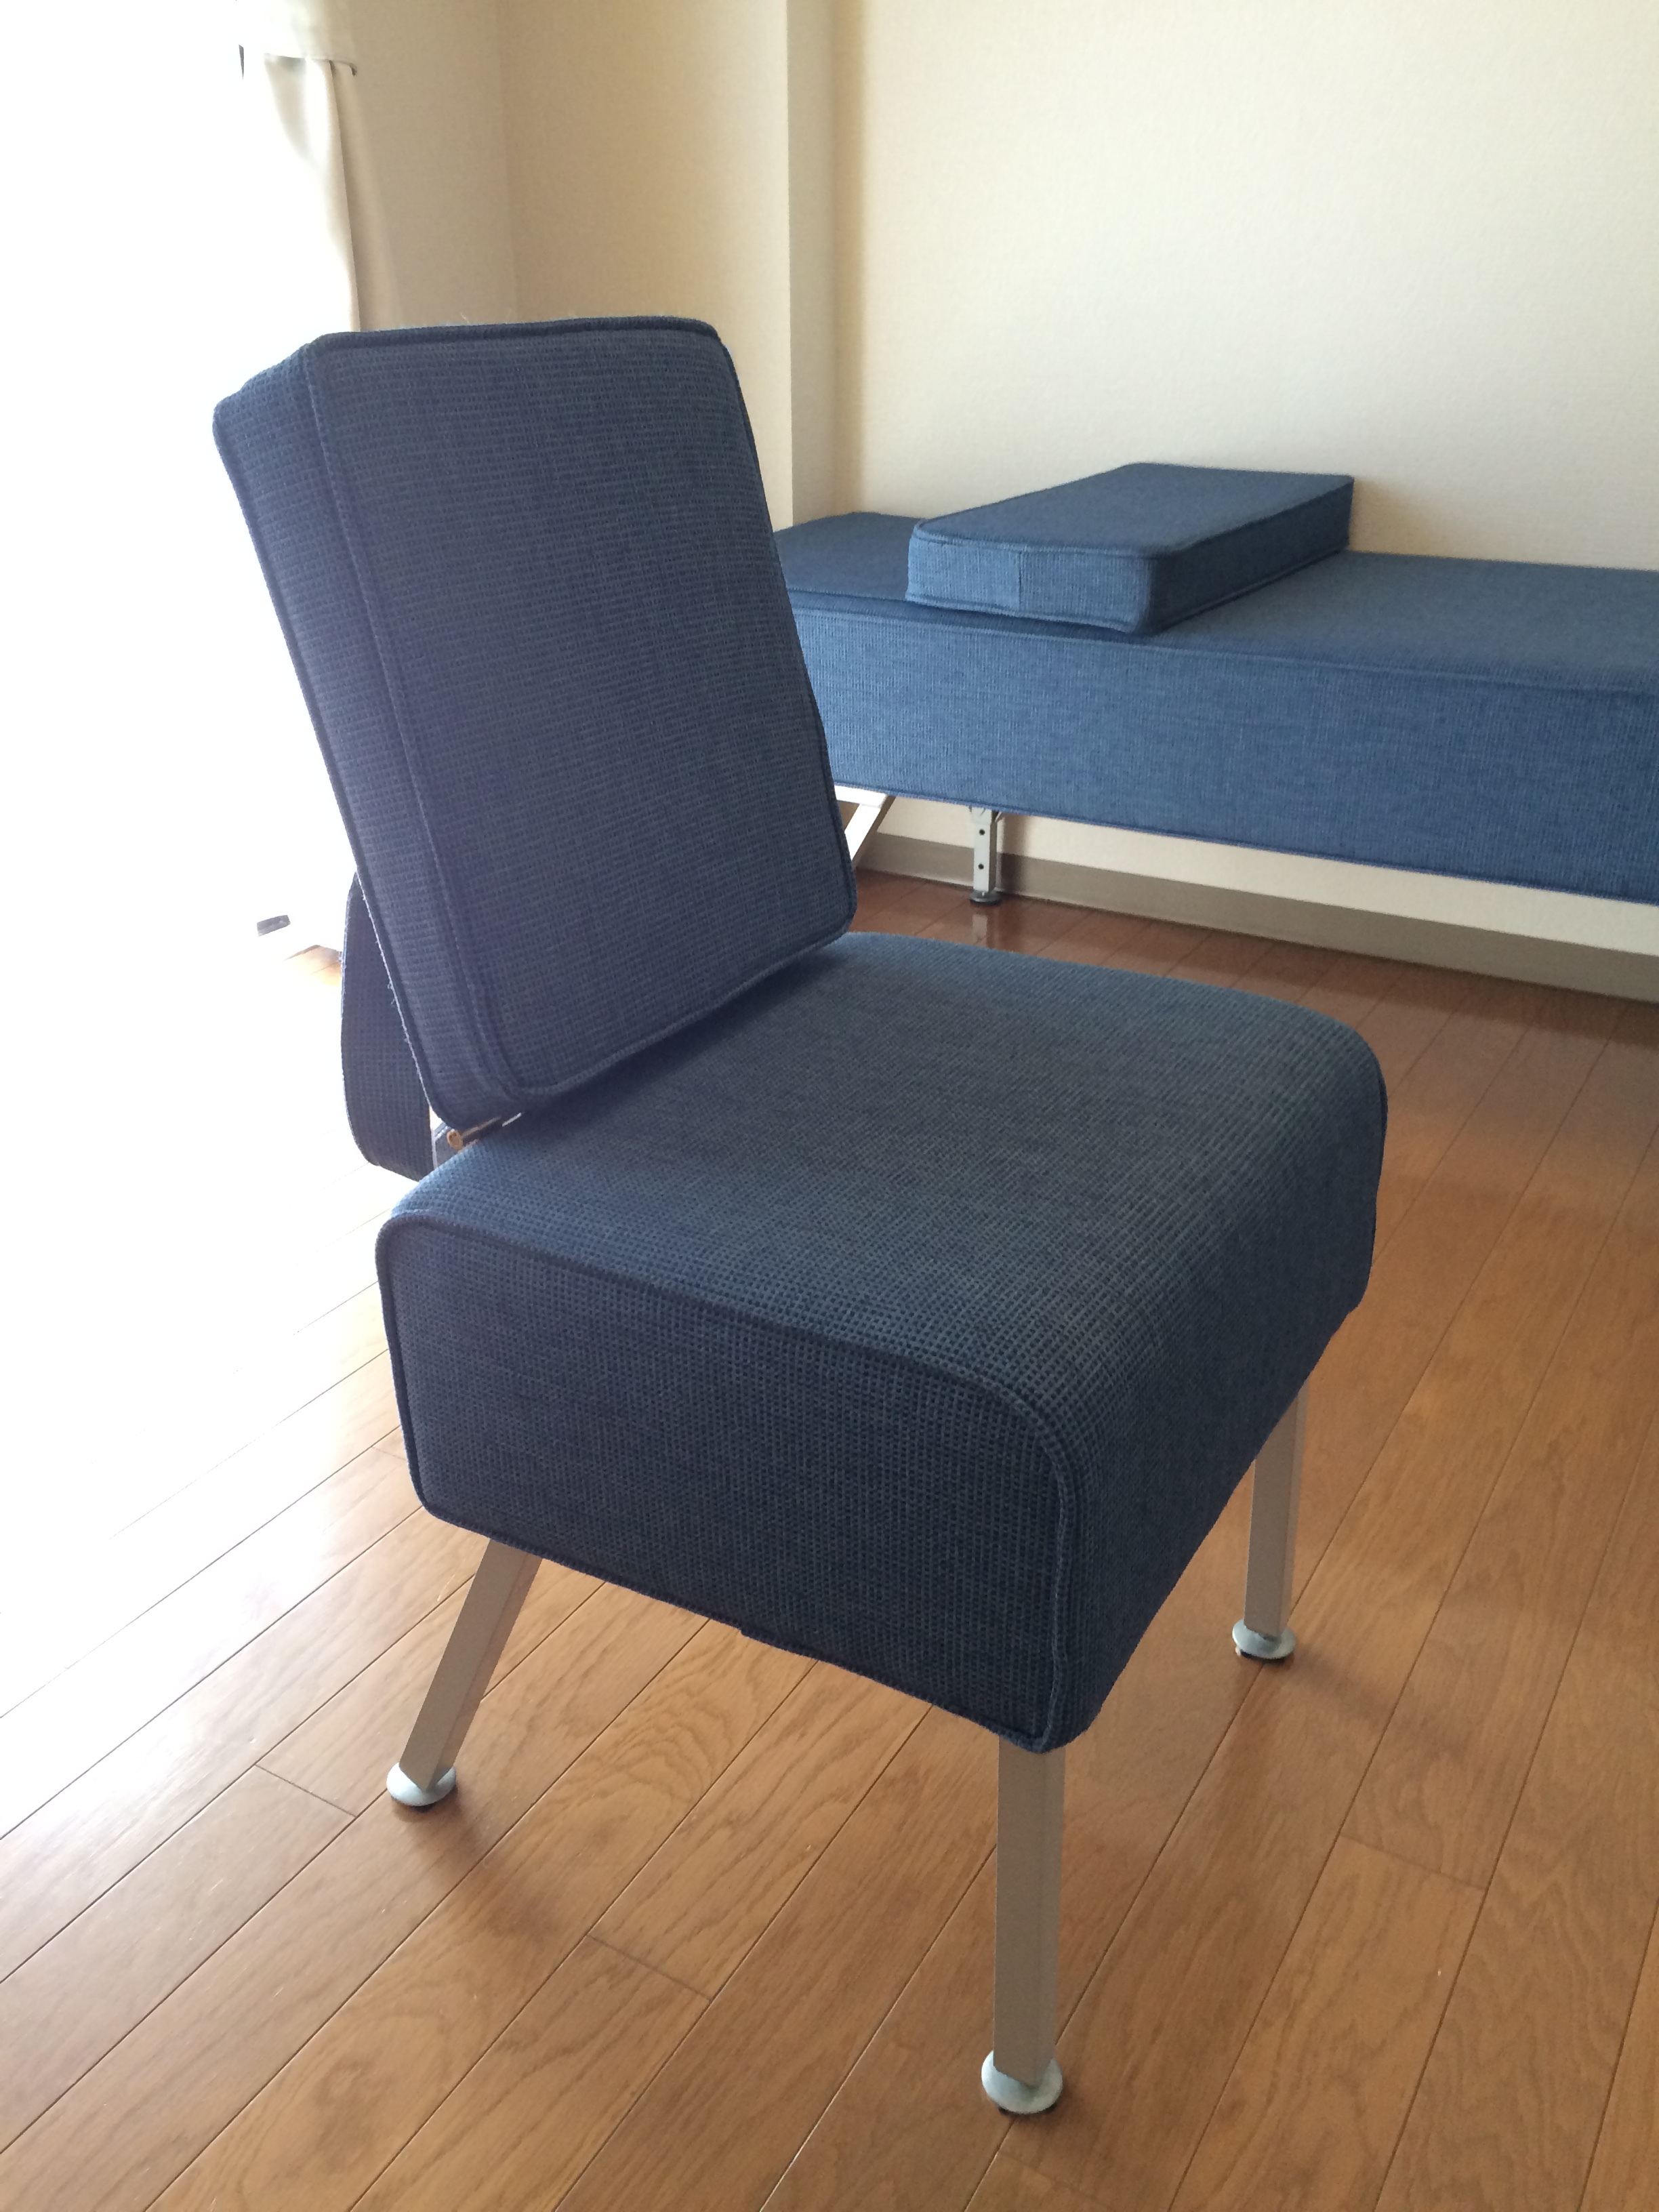 カイロプラクティック サービカルチェア - 椅子/チェア